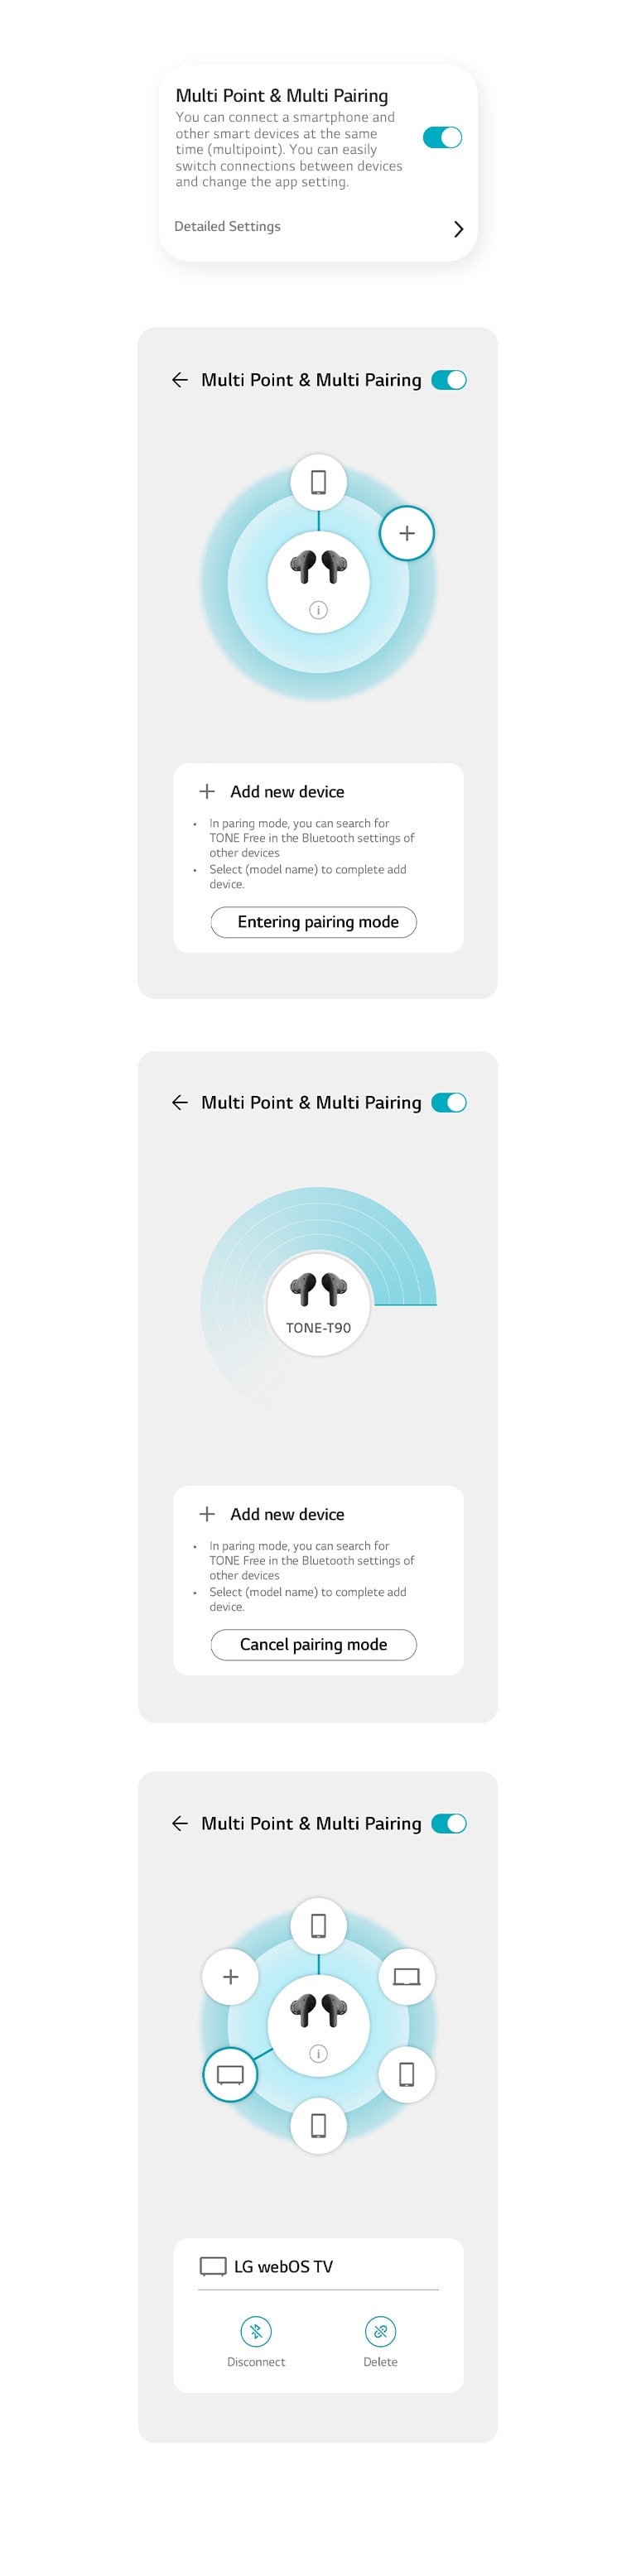 Immagini delle funzioni Multi Point e Multi Pairing sull’app.